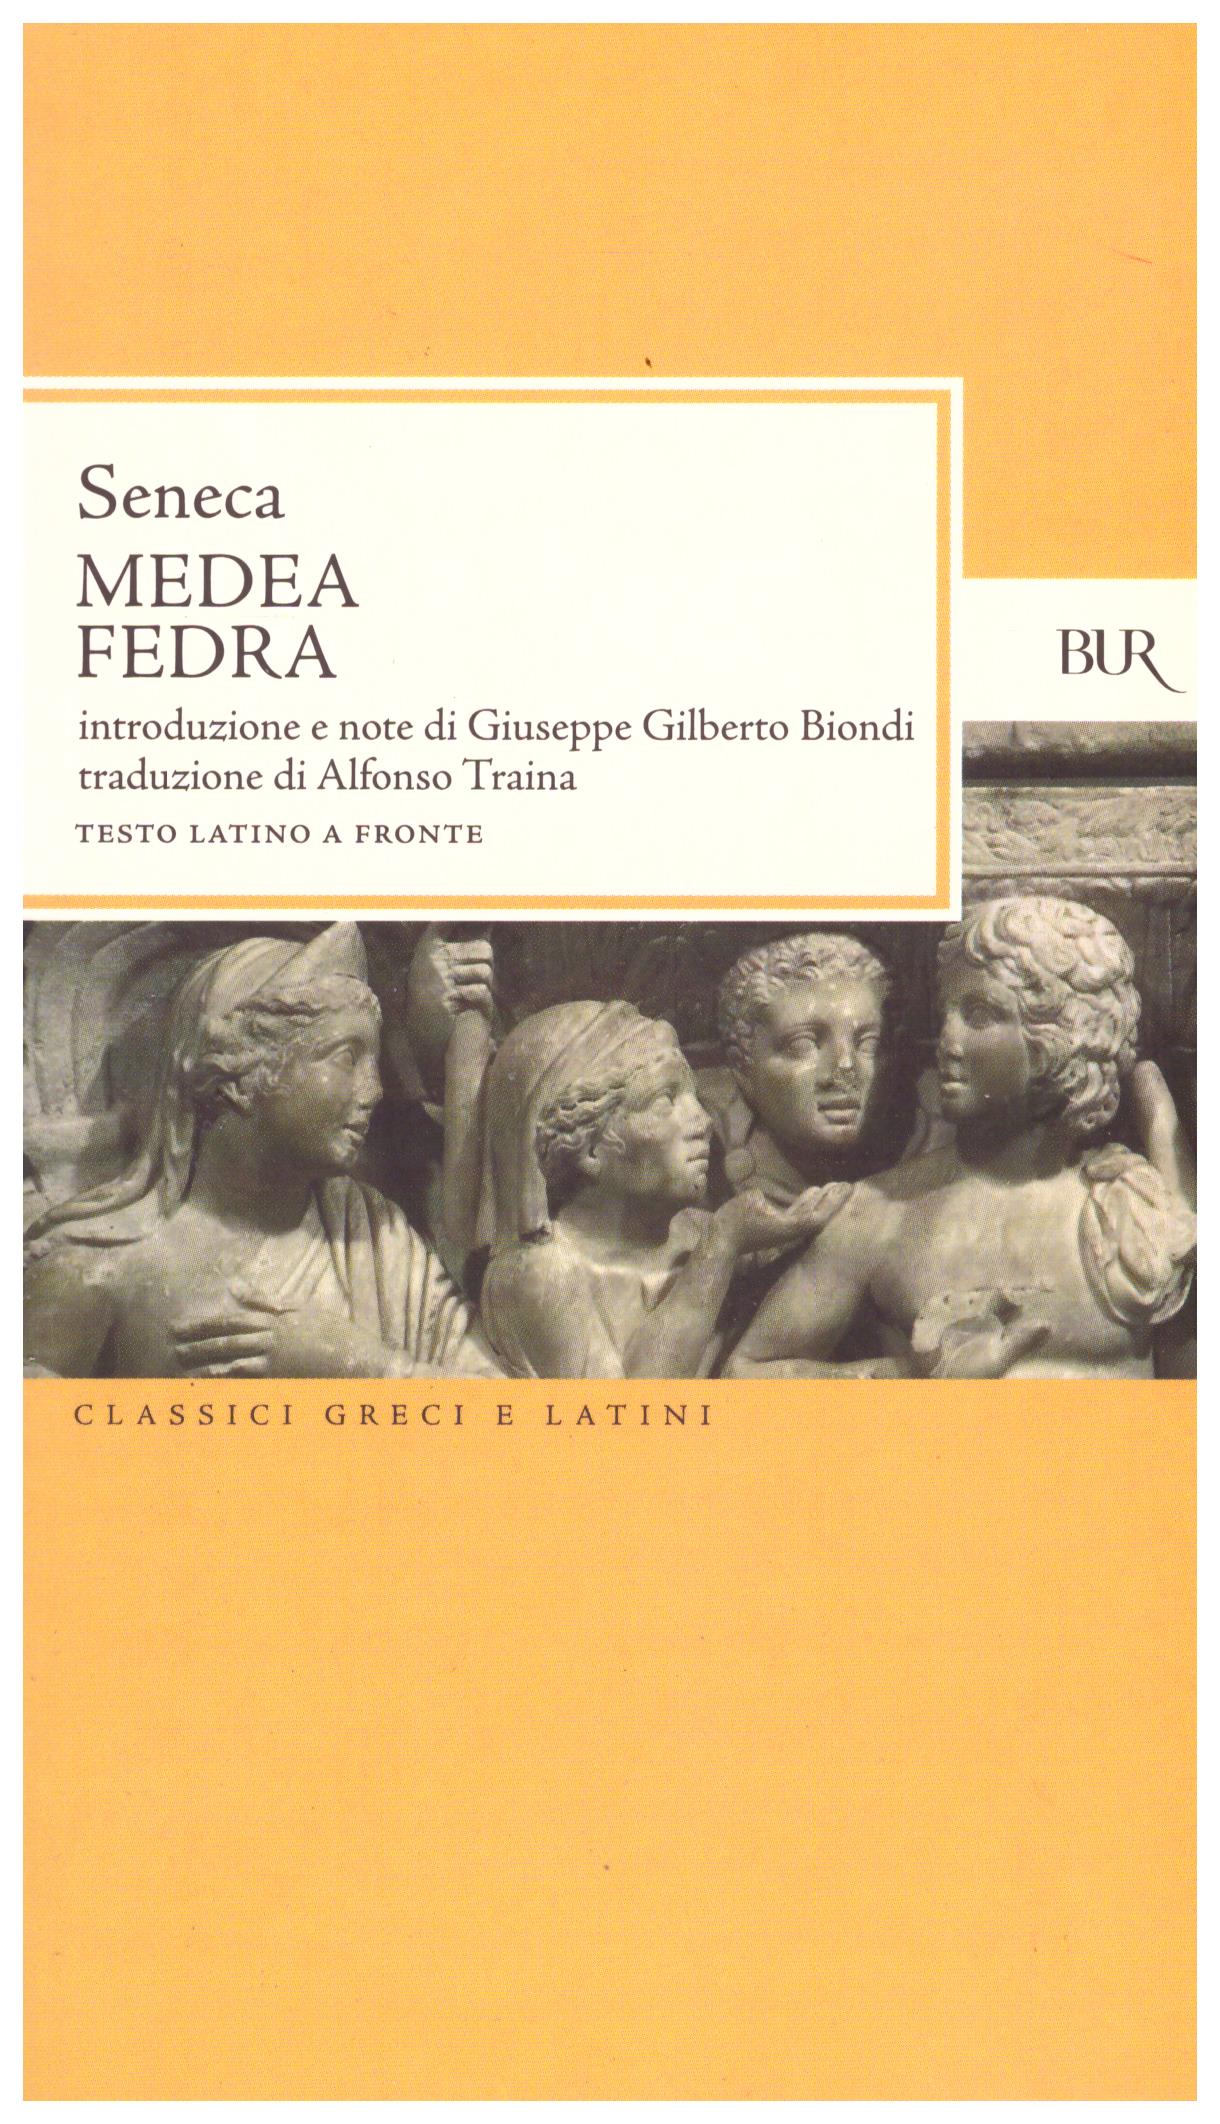 Titolo: Medea, Fedra Autore: Seneca Editore: Bur, 2006